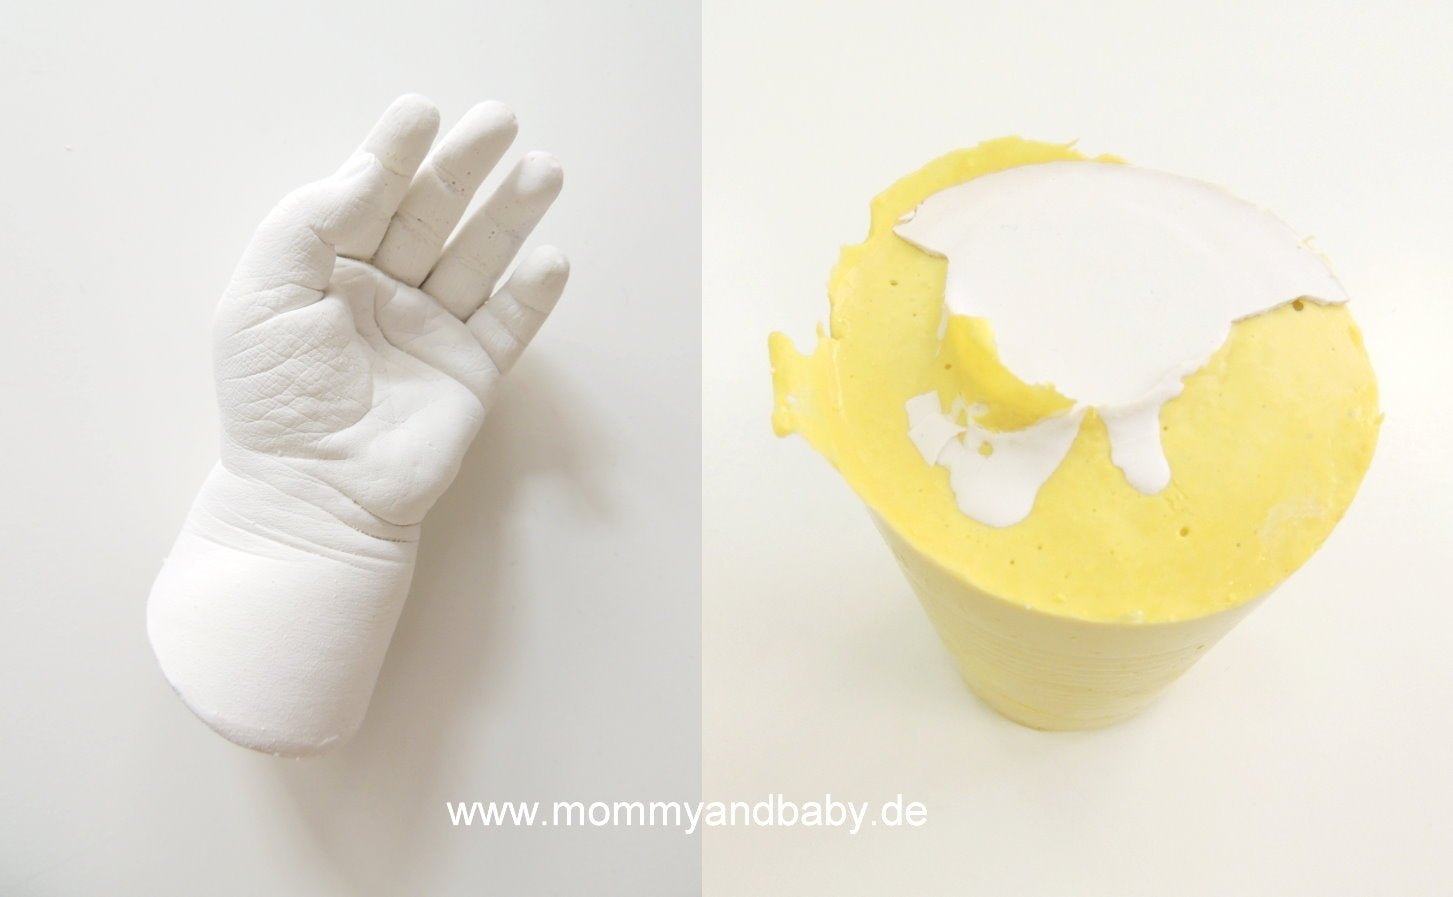 Abformmasse Alginat 453g - 3D Baby Abdruck selbermachen // biologisch & schnell abbindend - Mommy & Baby